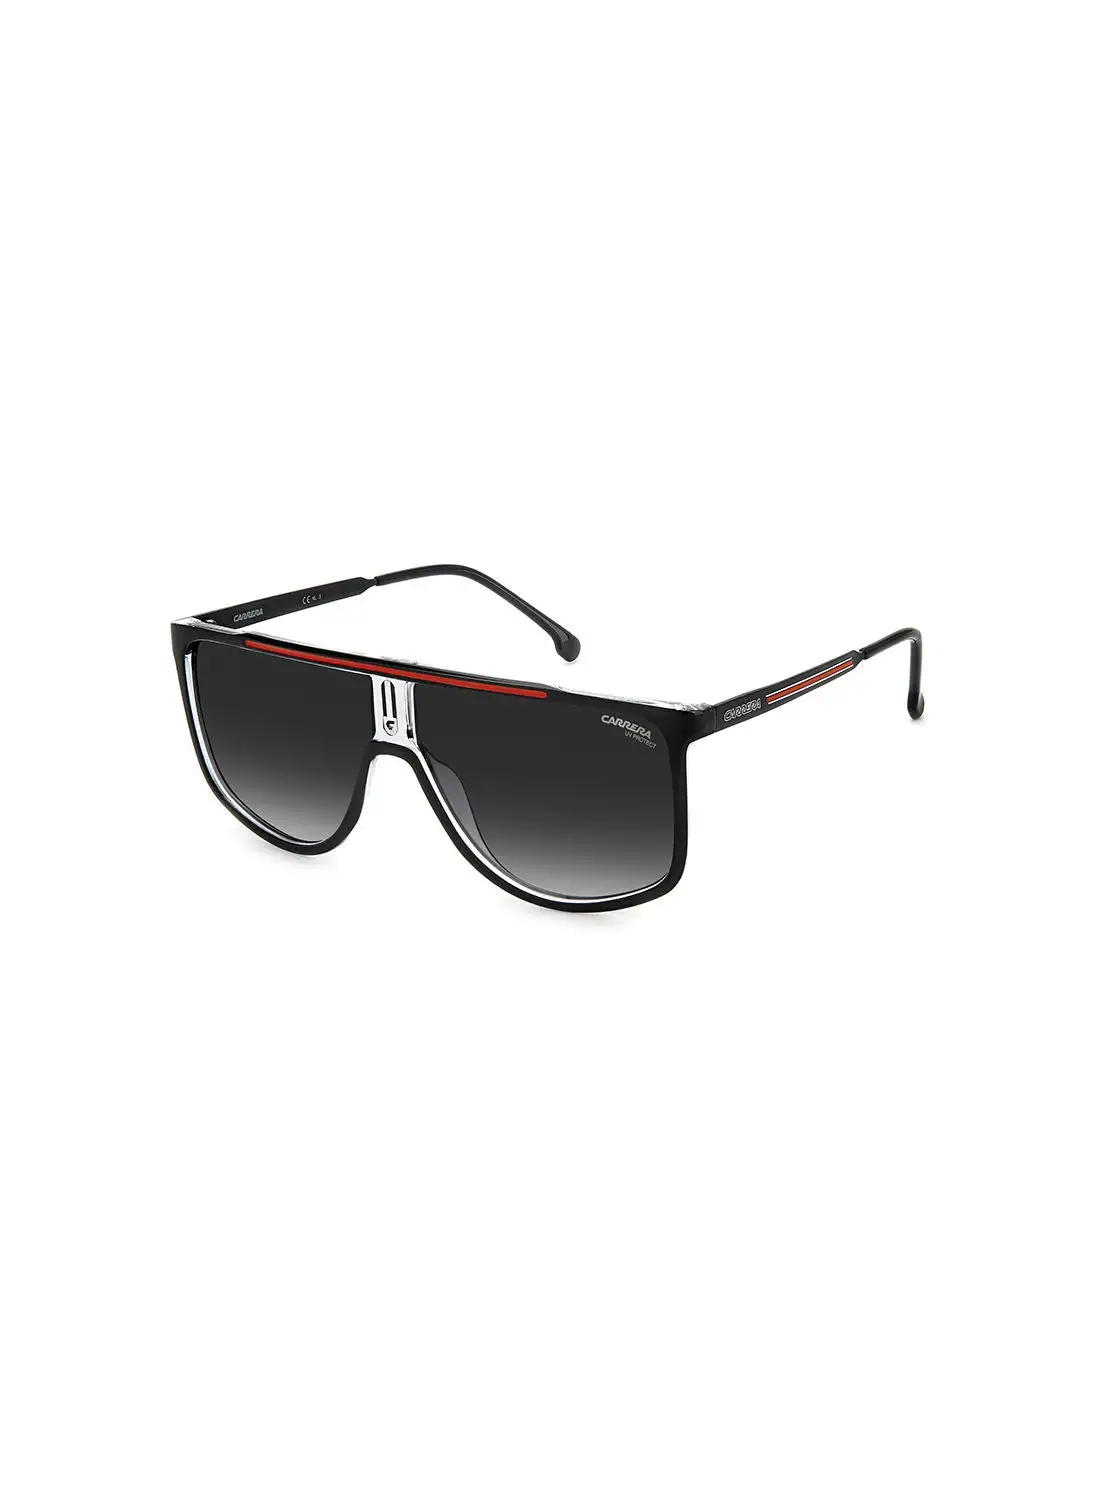 نظارة شمسية كاريرا نافيجيتور للحماية من الأشعة فوق البنفسجية للرجال - Carrera 1056/S أسود/أحمر 61 - مقاس العدسة: 61 ملم